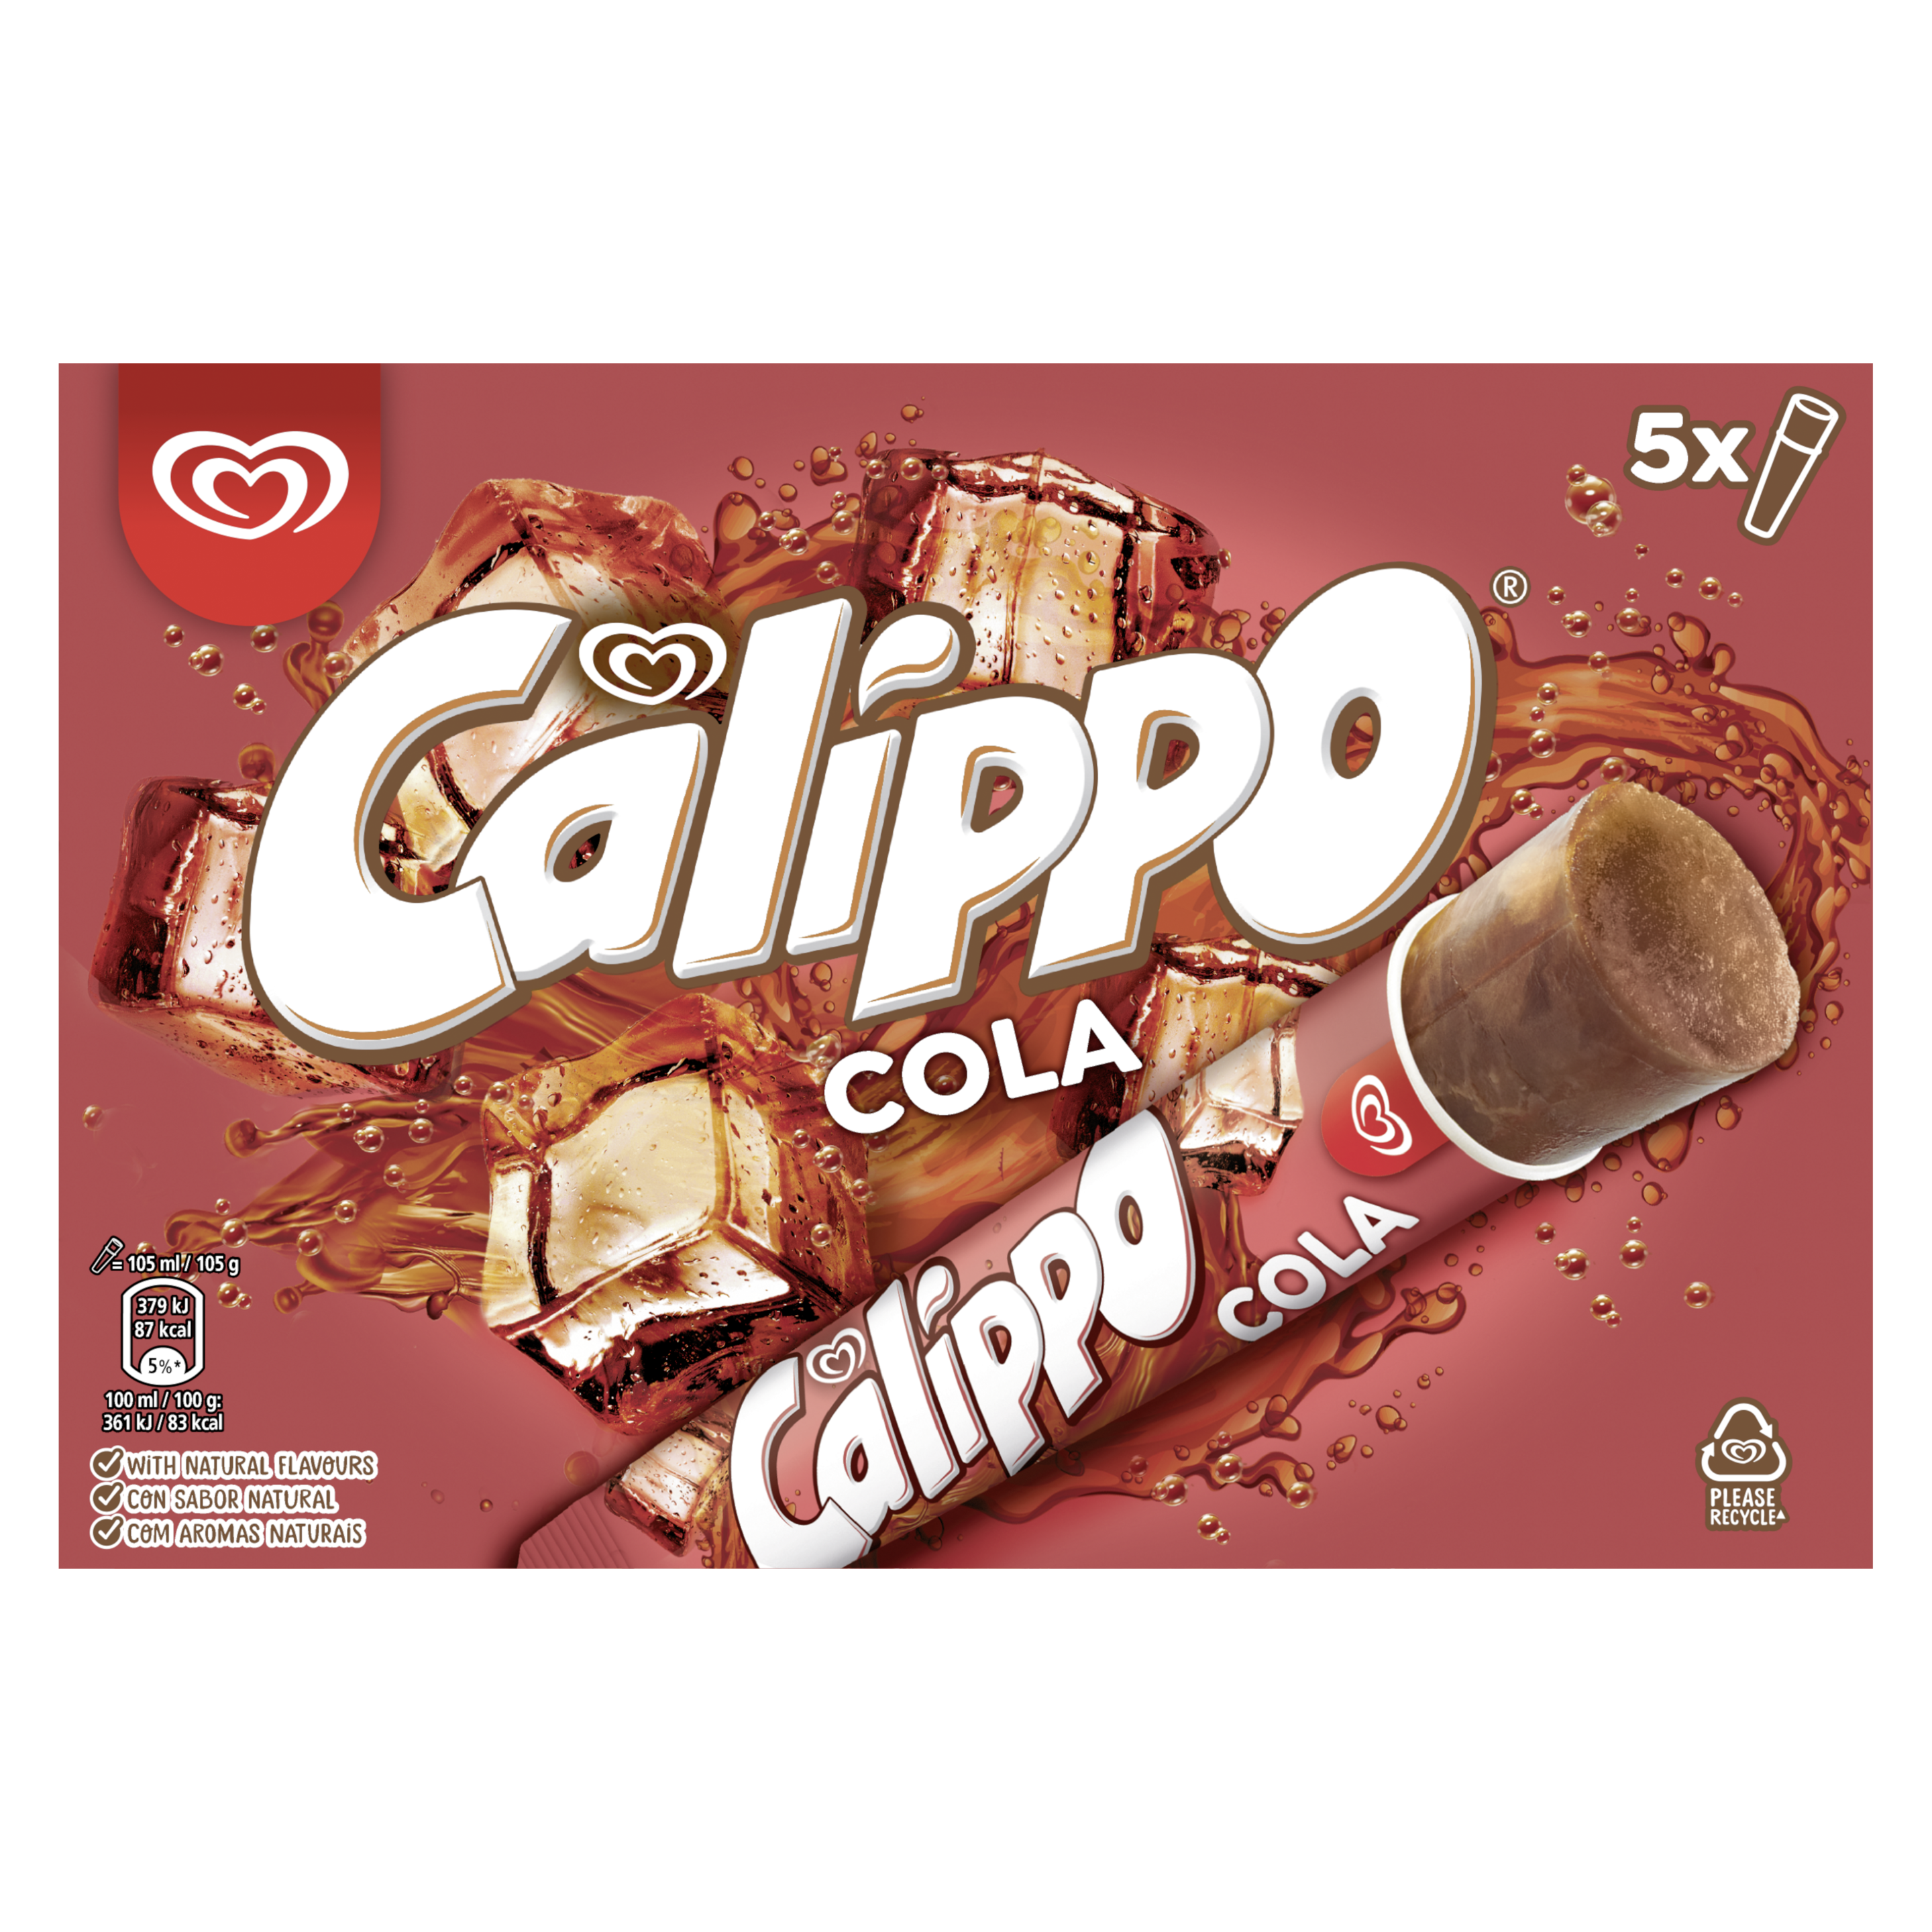 Calippo Cola x 5